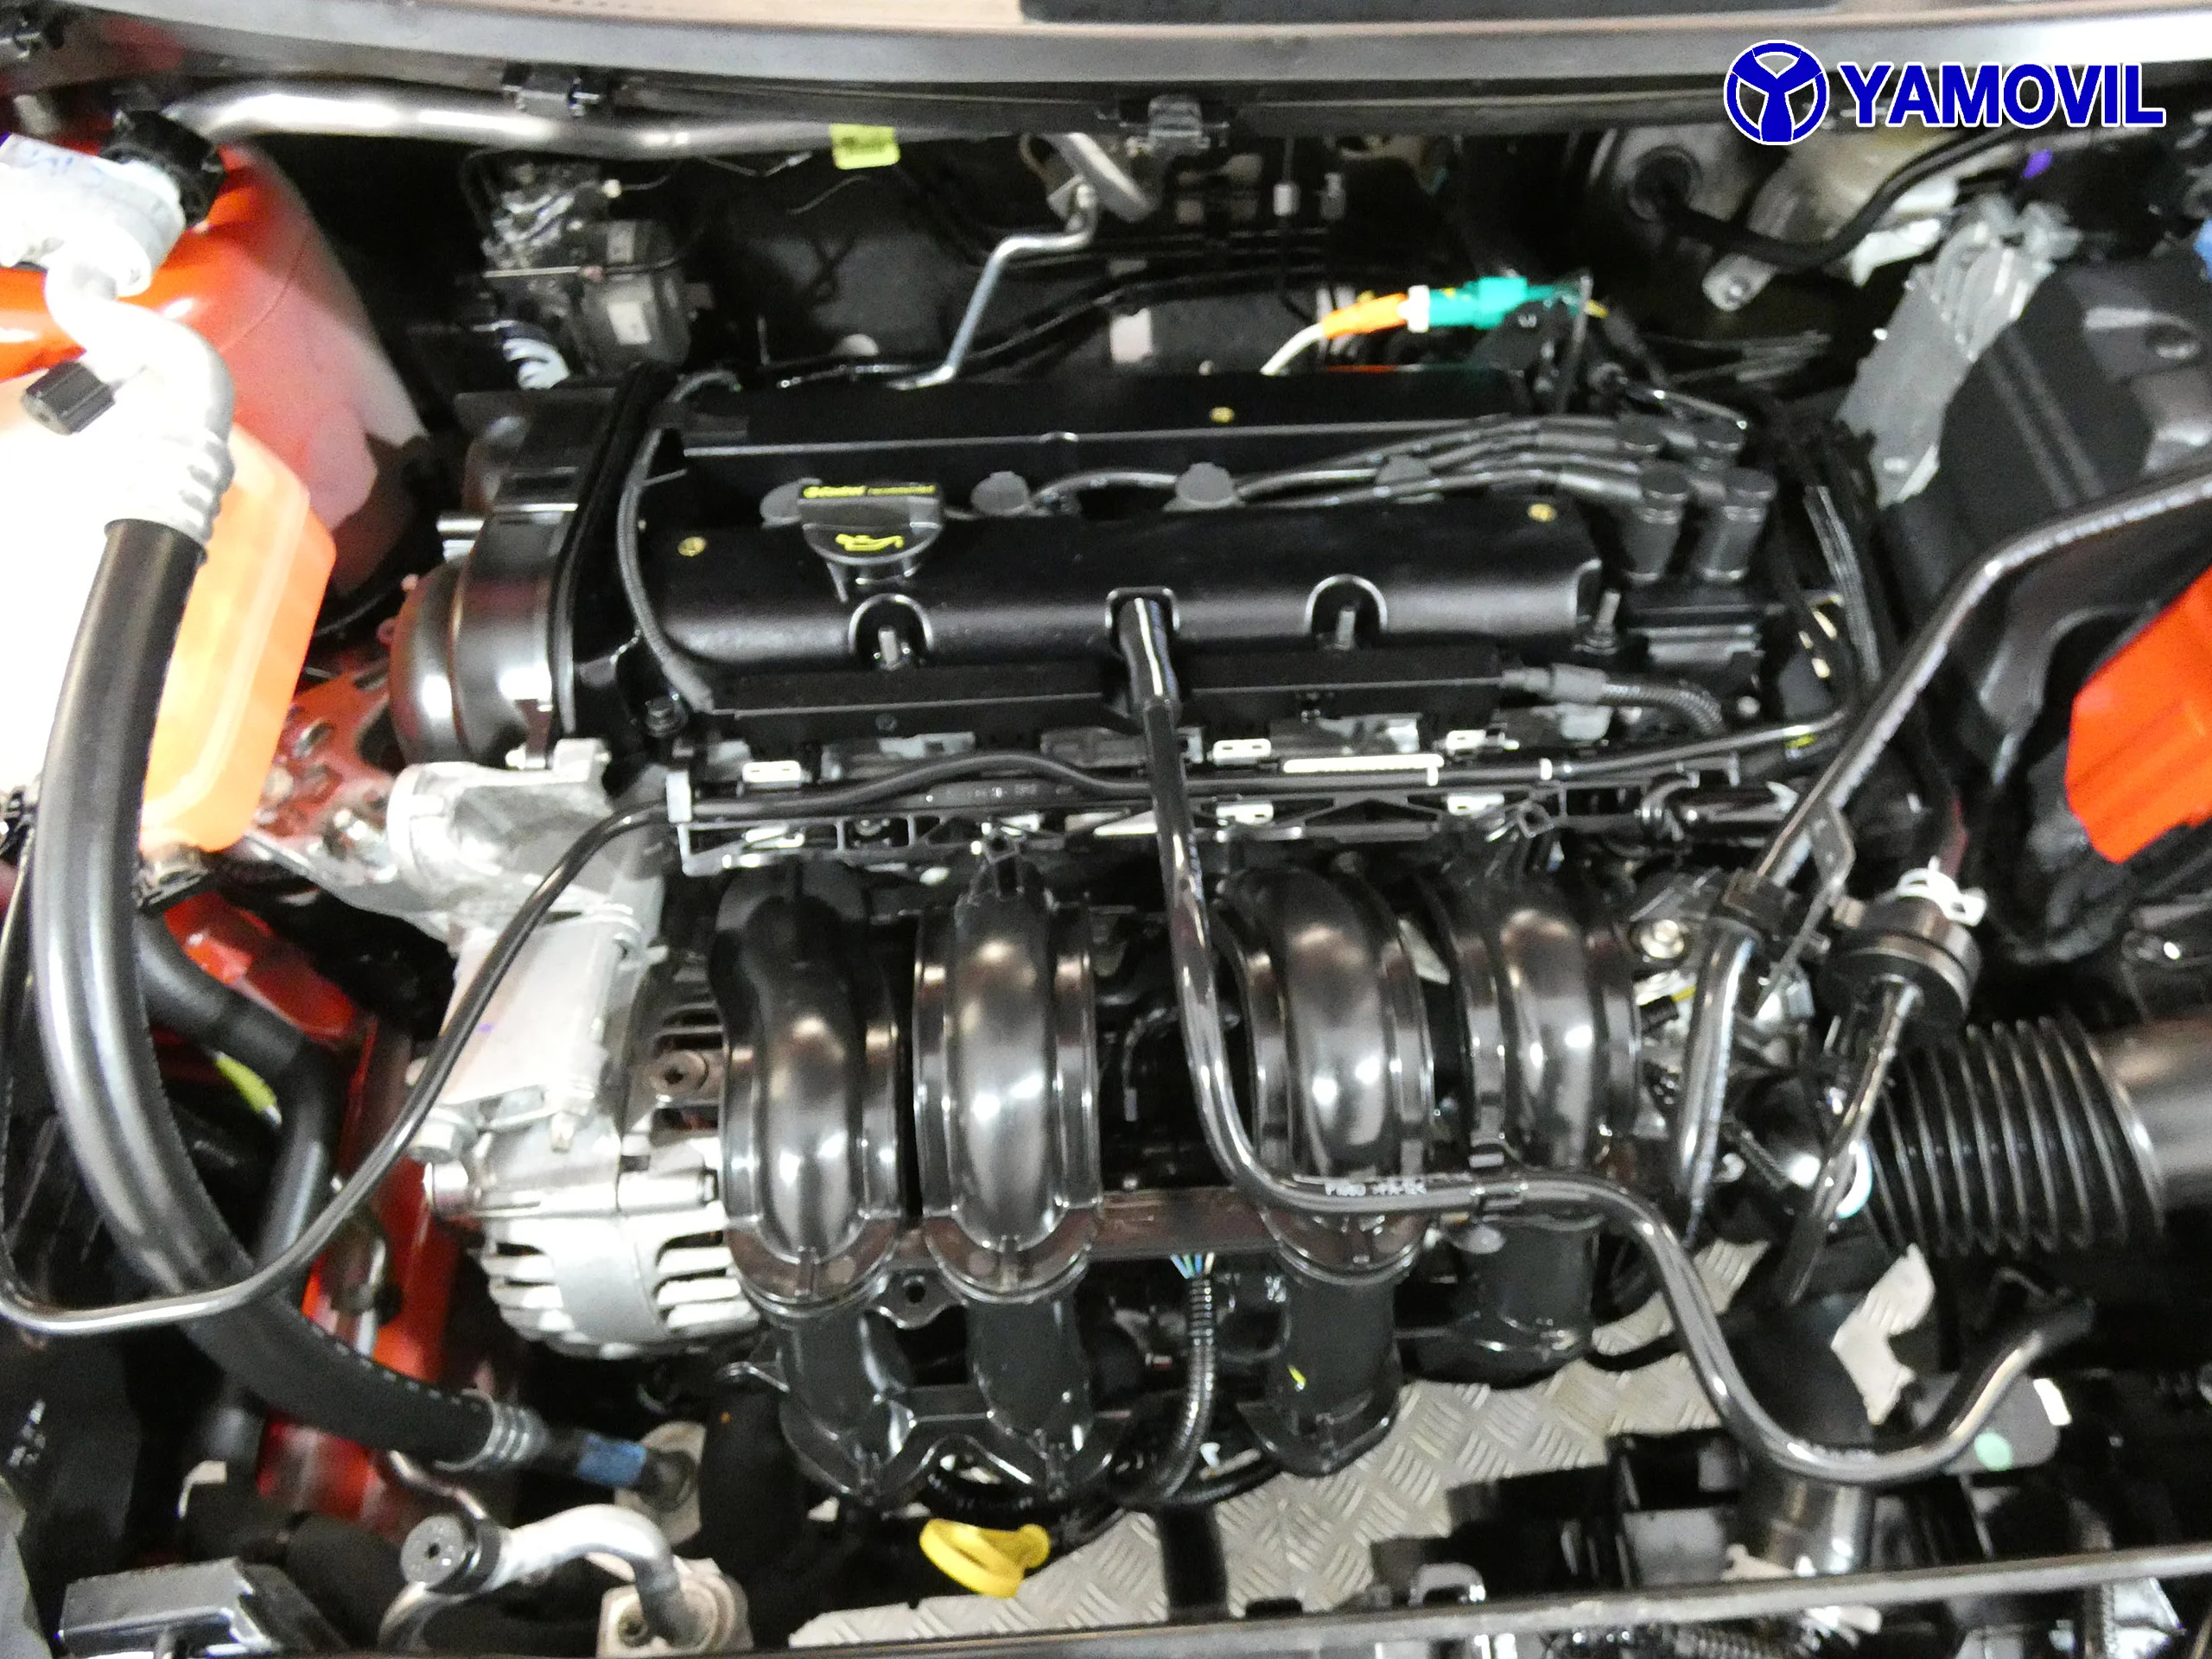 Ford Fiesta 1.25 DURATEC TREND 5P - Foto 8